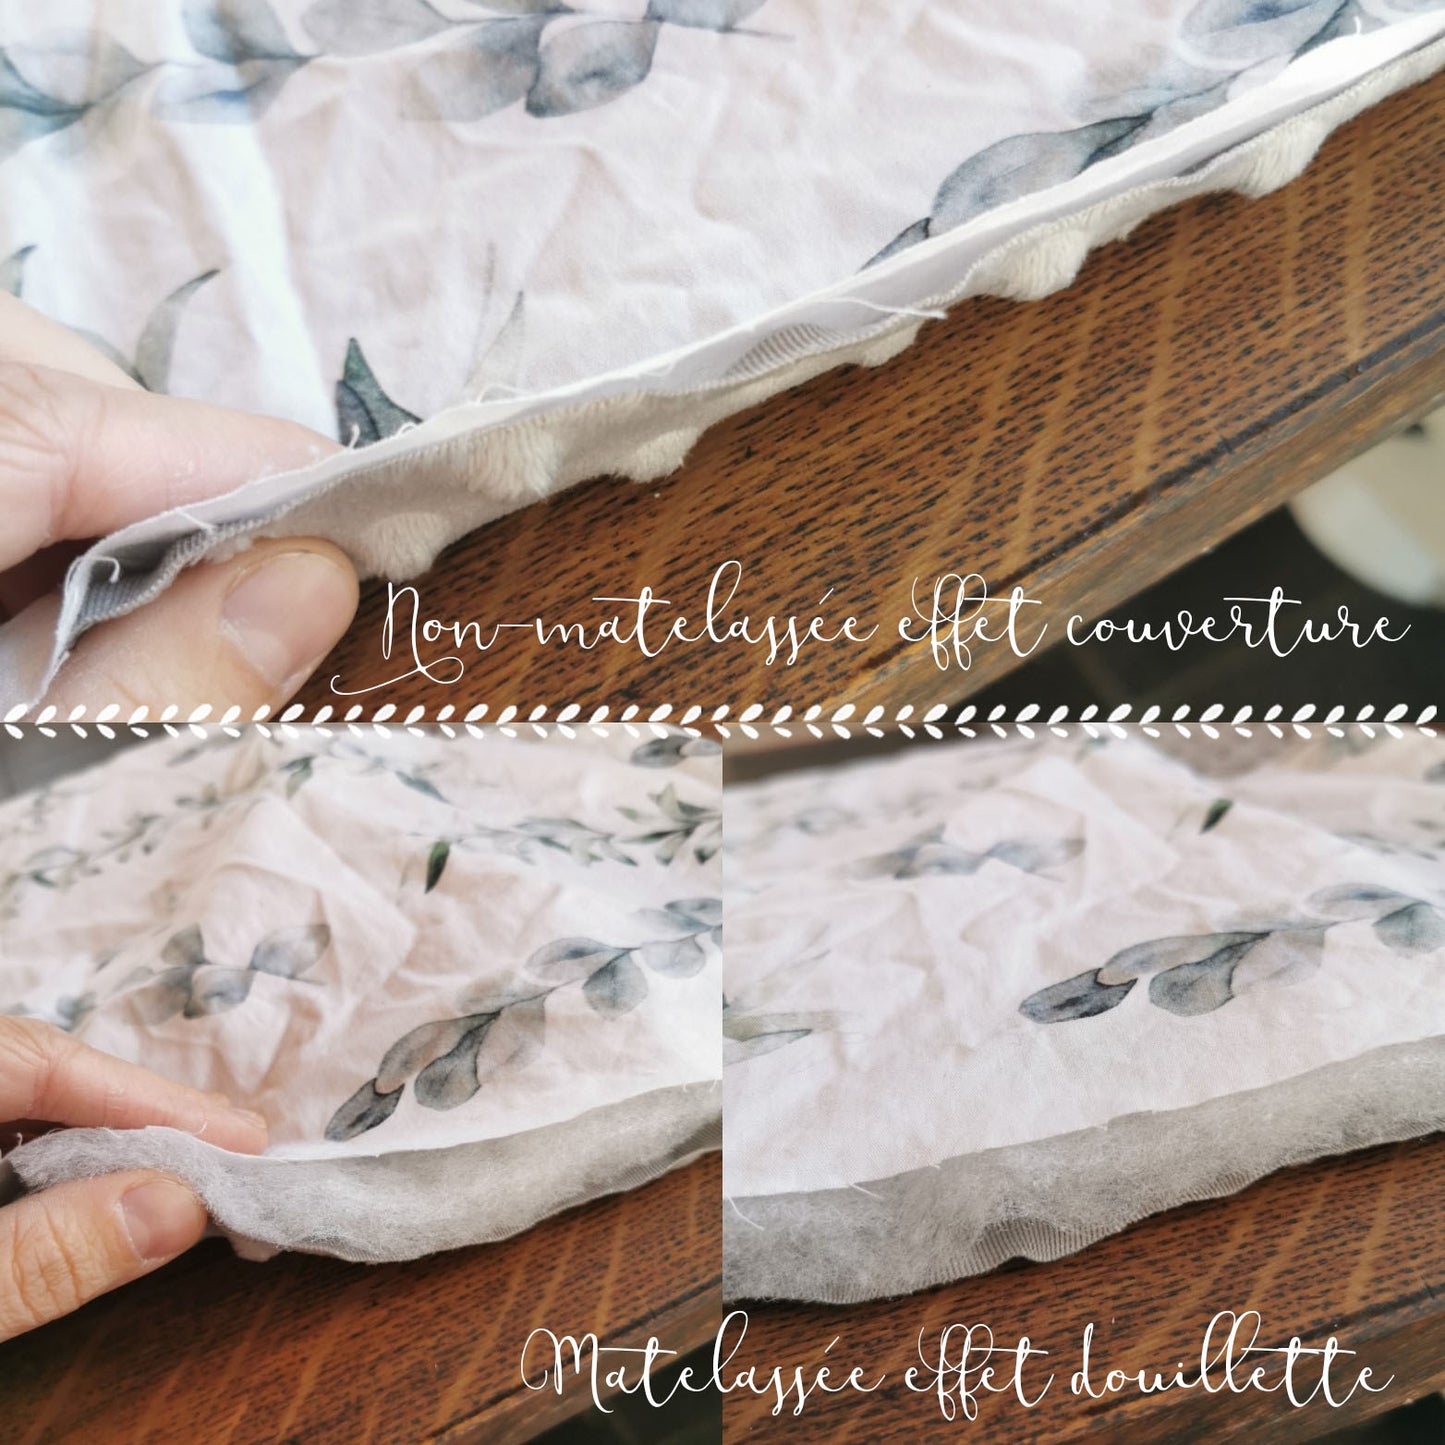 Couverture pour bassinette | Chevreuils quartz turquoise